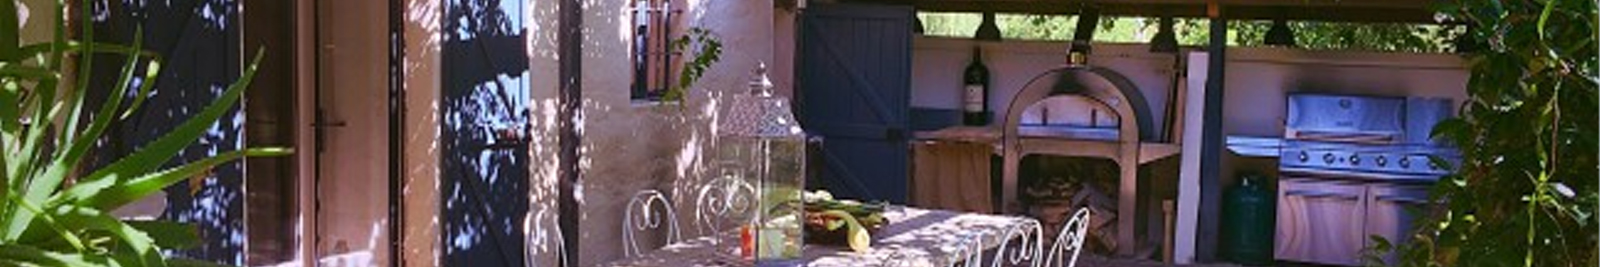 outdoor-kitchen-electrical-installation-ofallon-missouri st louis, mo